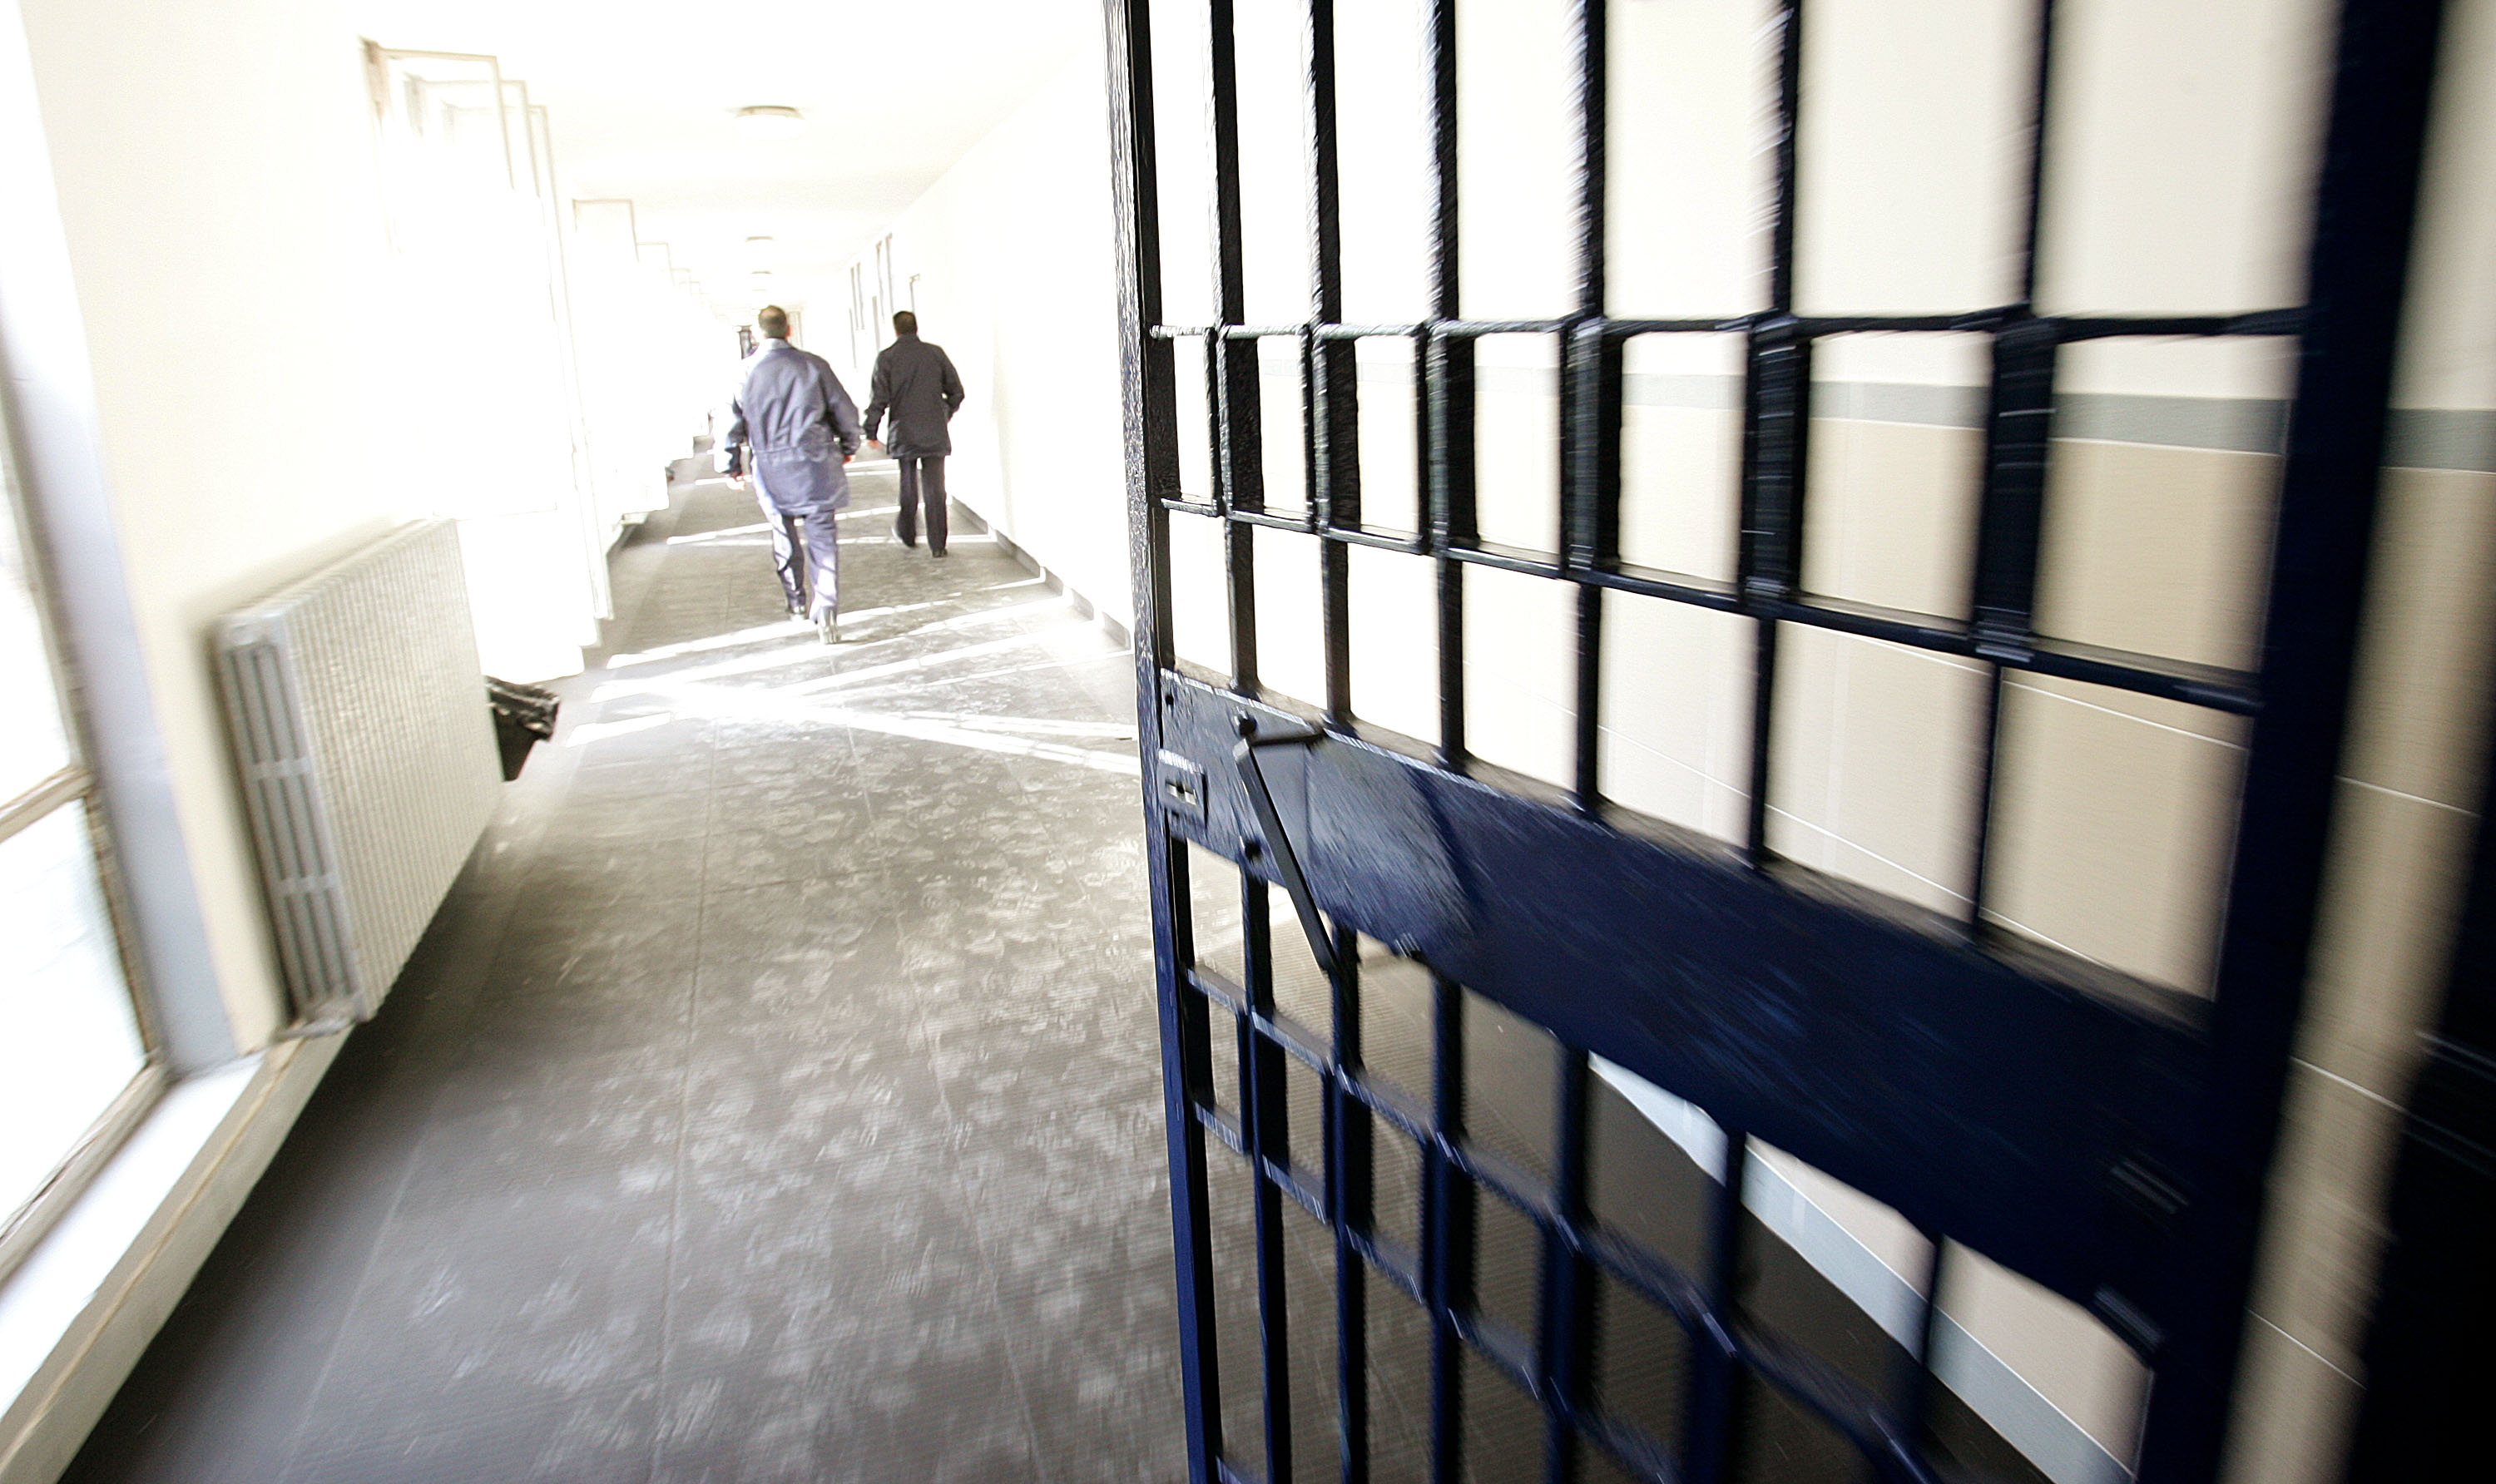  Carceri, SAPPE sui disordini nel carcere di Pisa. “sistema penitenziario si sta sgretolando di giorno in giorno”